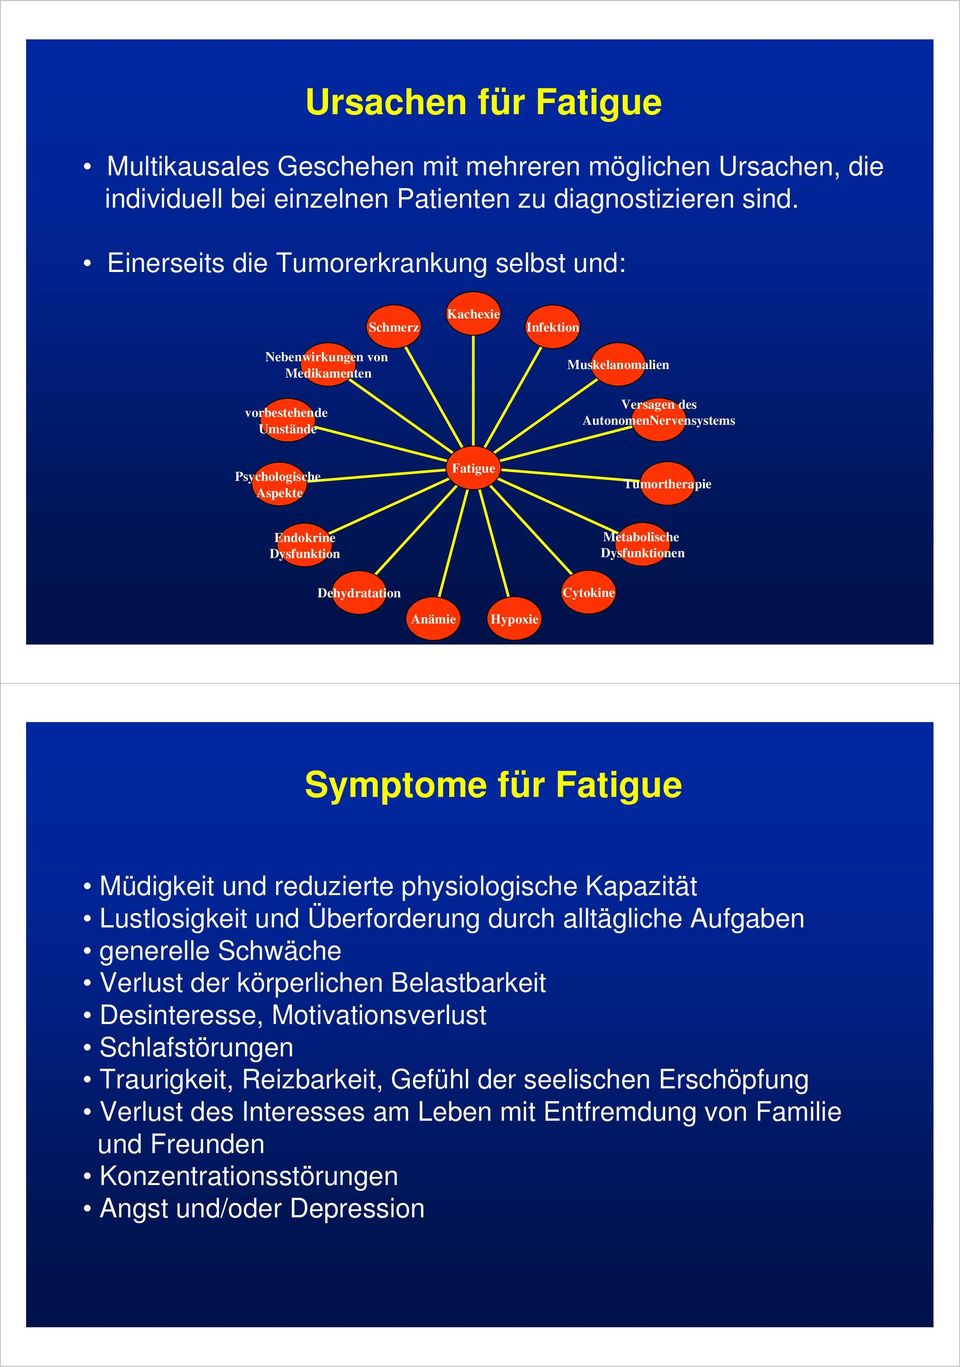 Fatigue Tumortherapie Endokrine Dysfunktion Metabolische Dysfunktionen Dehydratation Anämie Hypoxie Cytokine Symptome für Fatigue Müdigkeit und reduzierte physiologische Kapazität Lustlosigkeit und